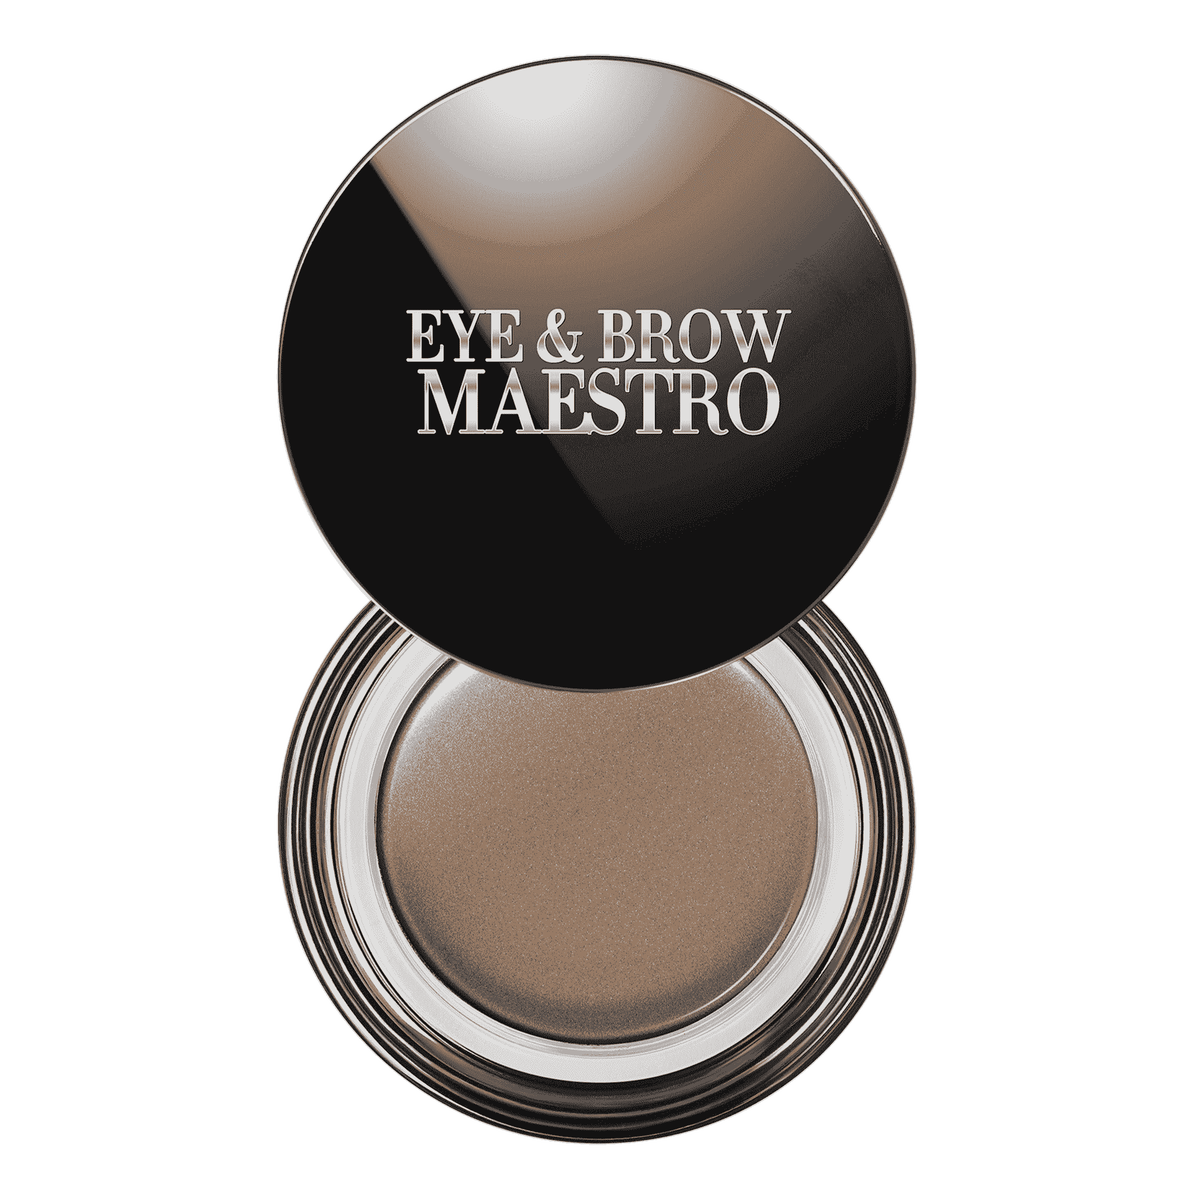 Eye & Brow Maestro